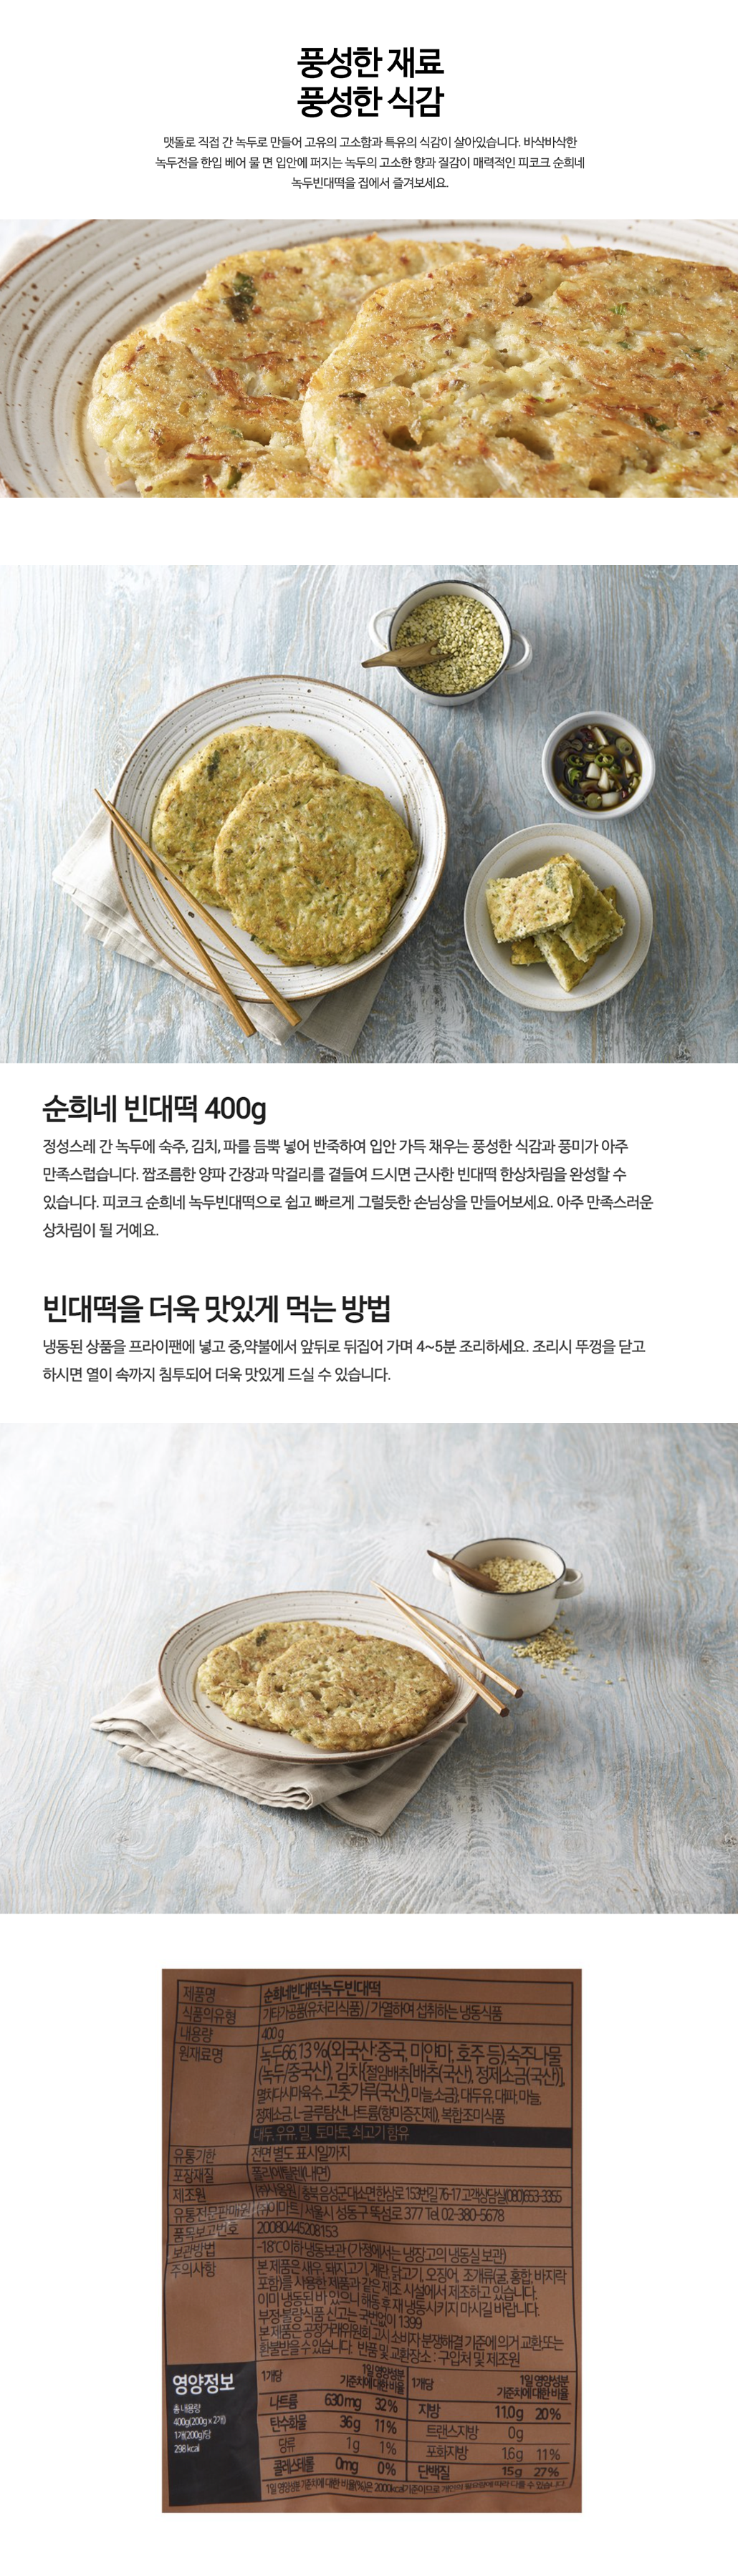 韓國食品-[피코크 Peacock] 순희네 녹두 빈대 떡 400g